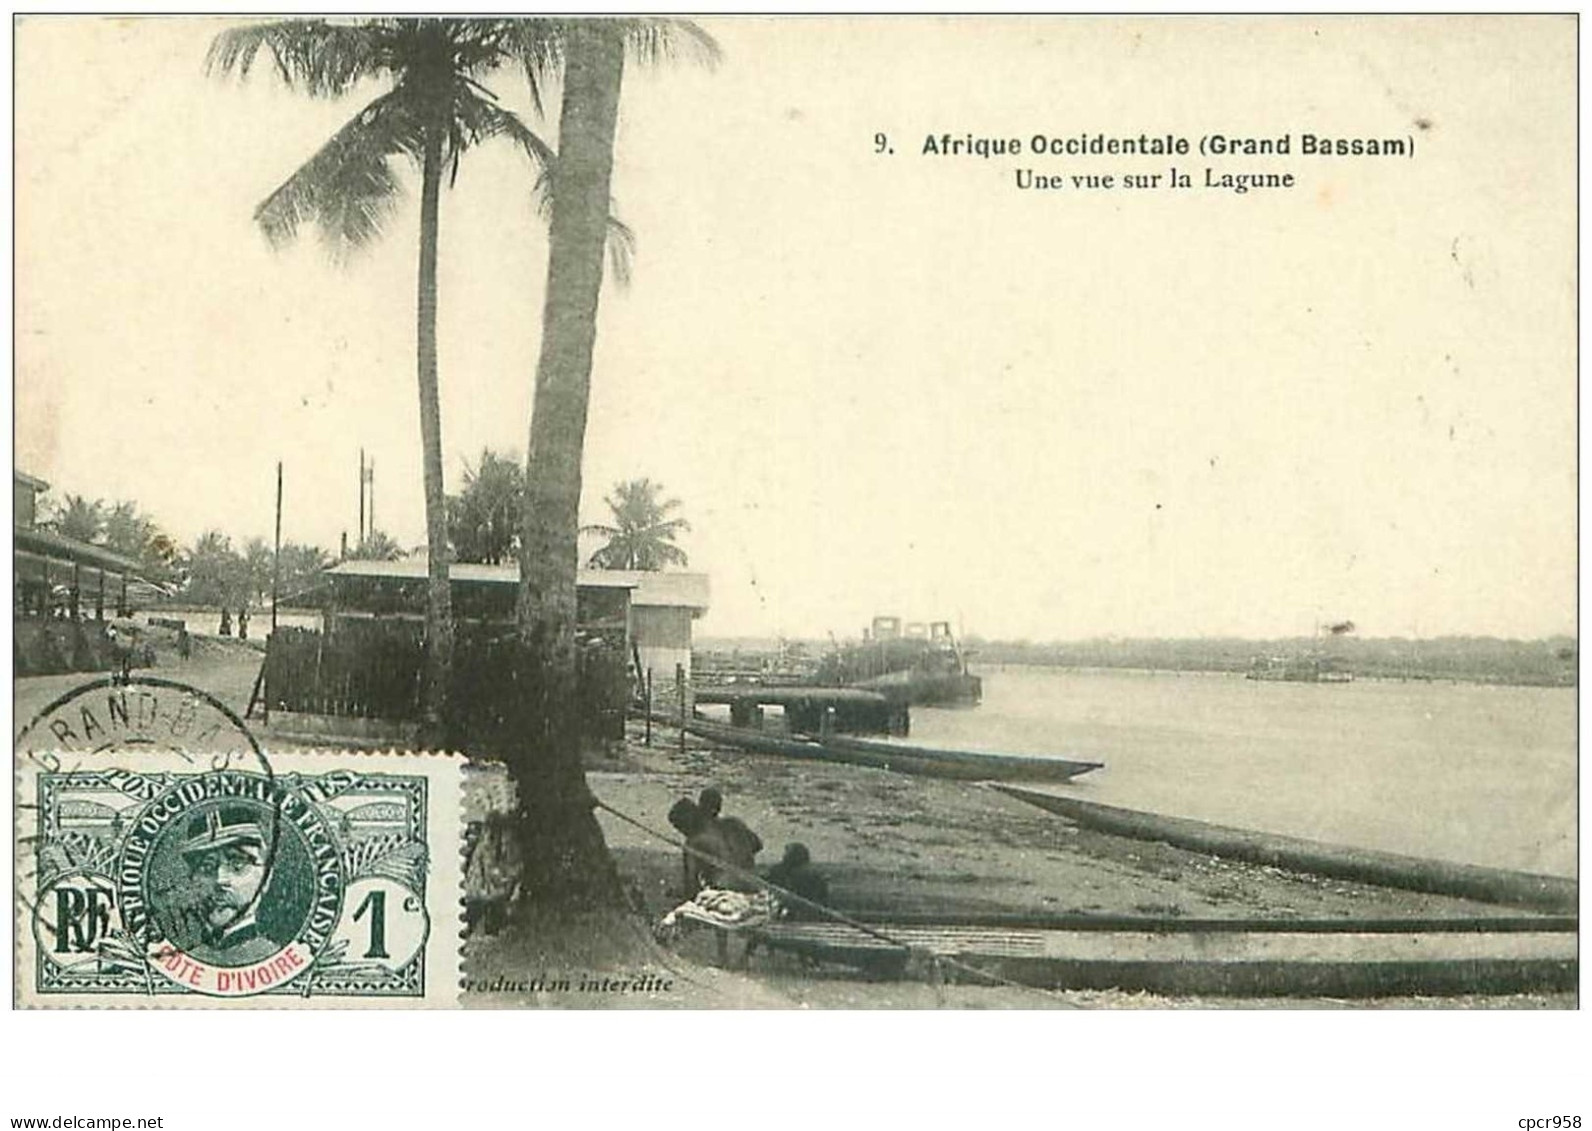 Cote D Ivoire. N°35373.une Vue Sur La Lagrune. Afrique Occidentale.grand Bassam - Costa De Marfil